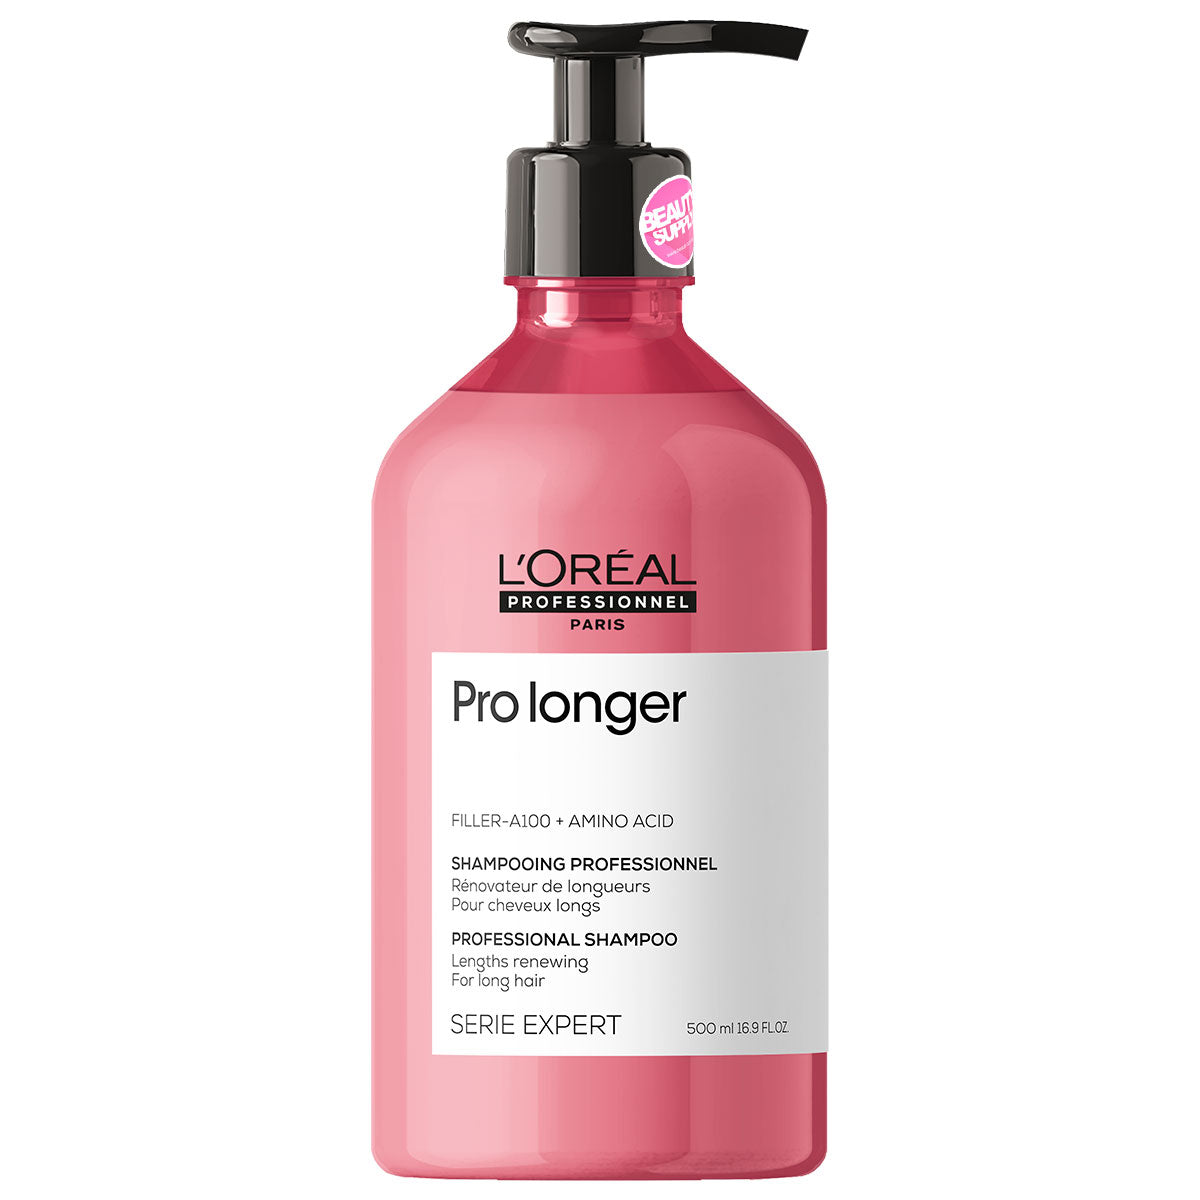 Shampoo Pro Longer Loreal Serie expert 500ml en Beauty Supply